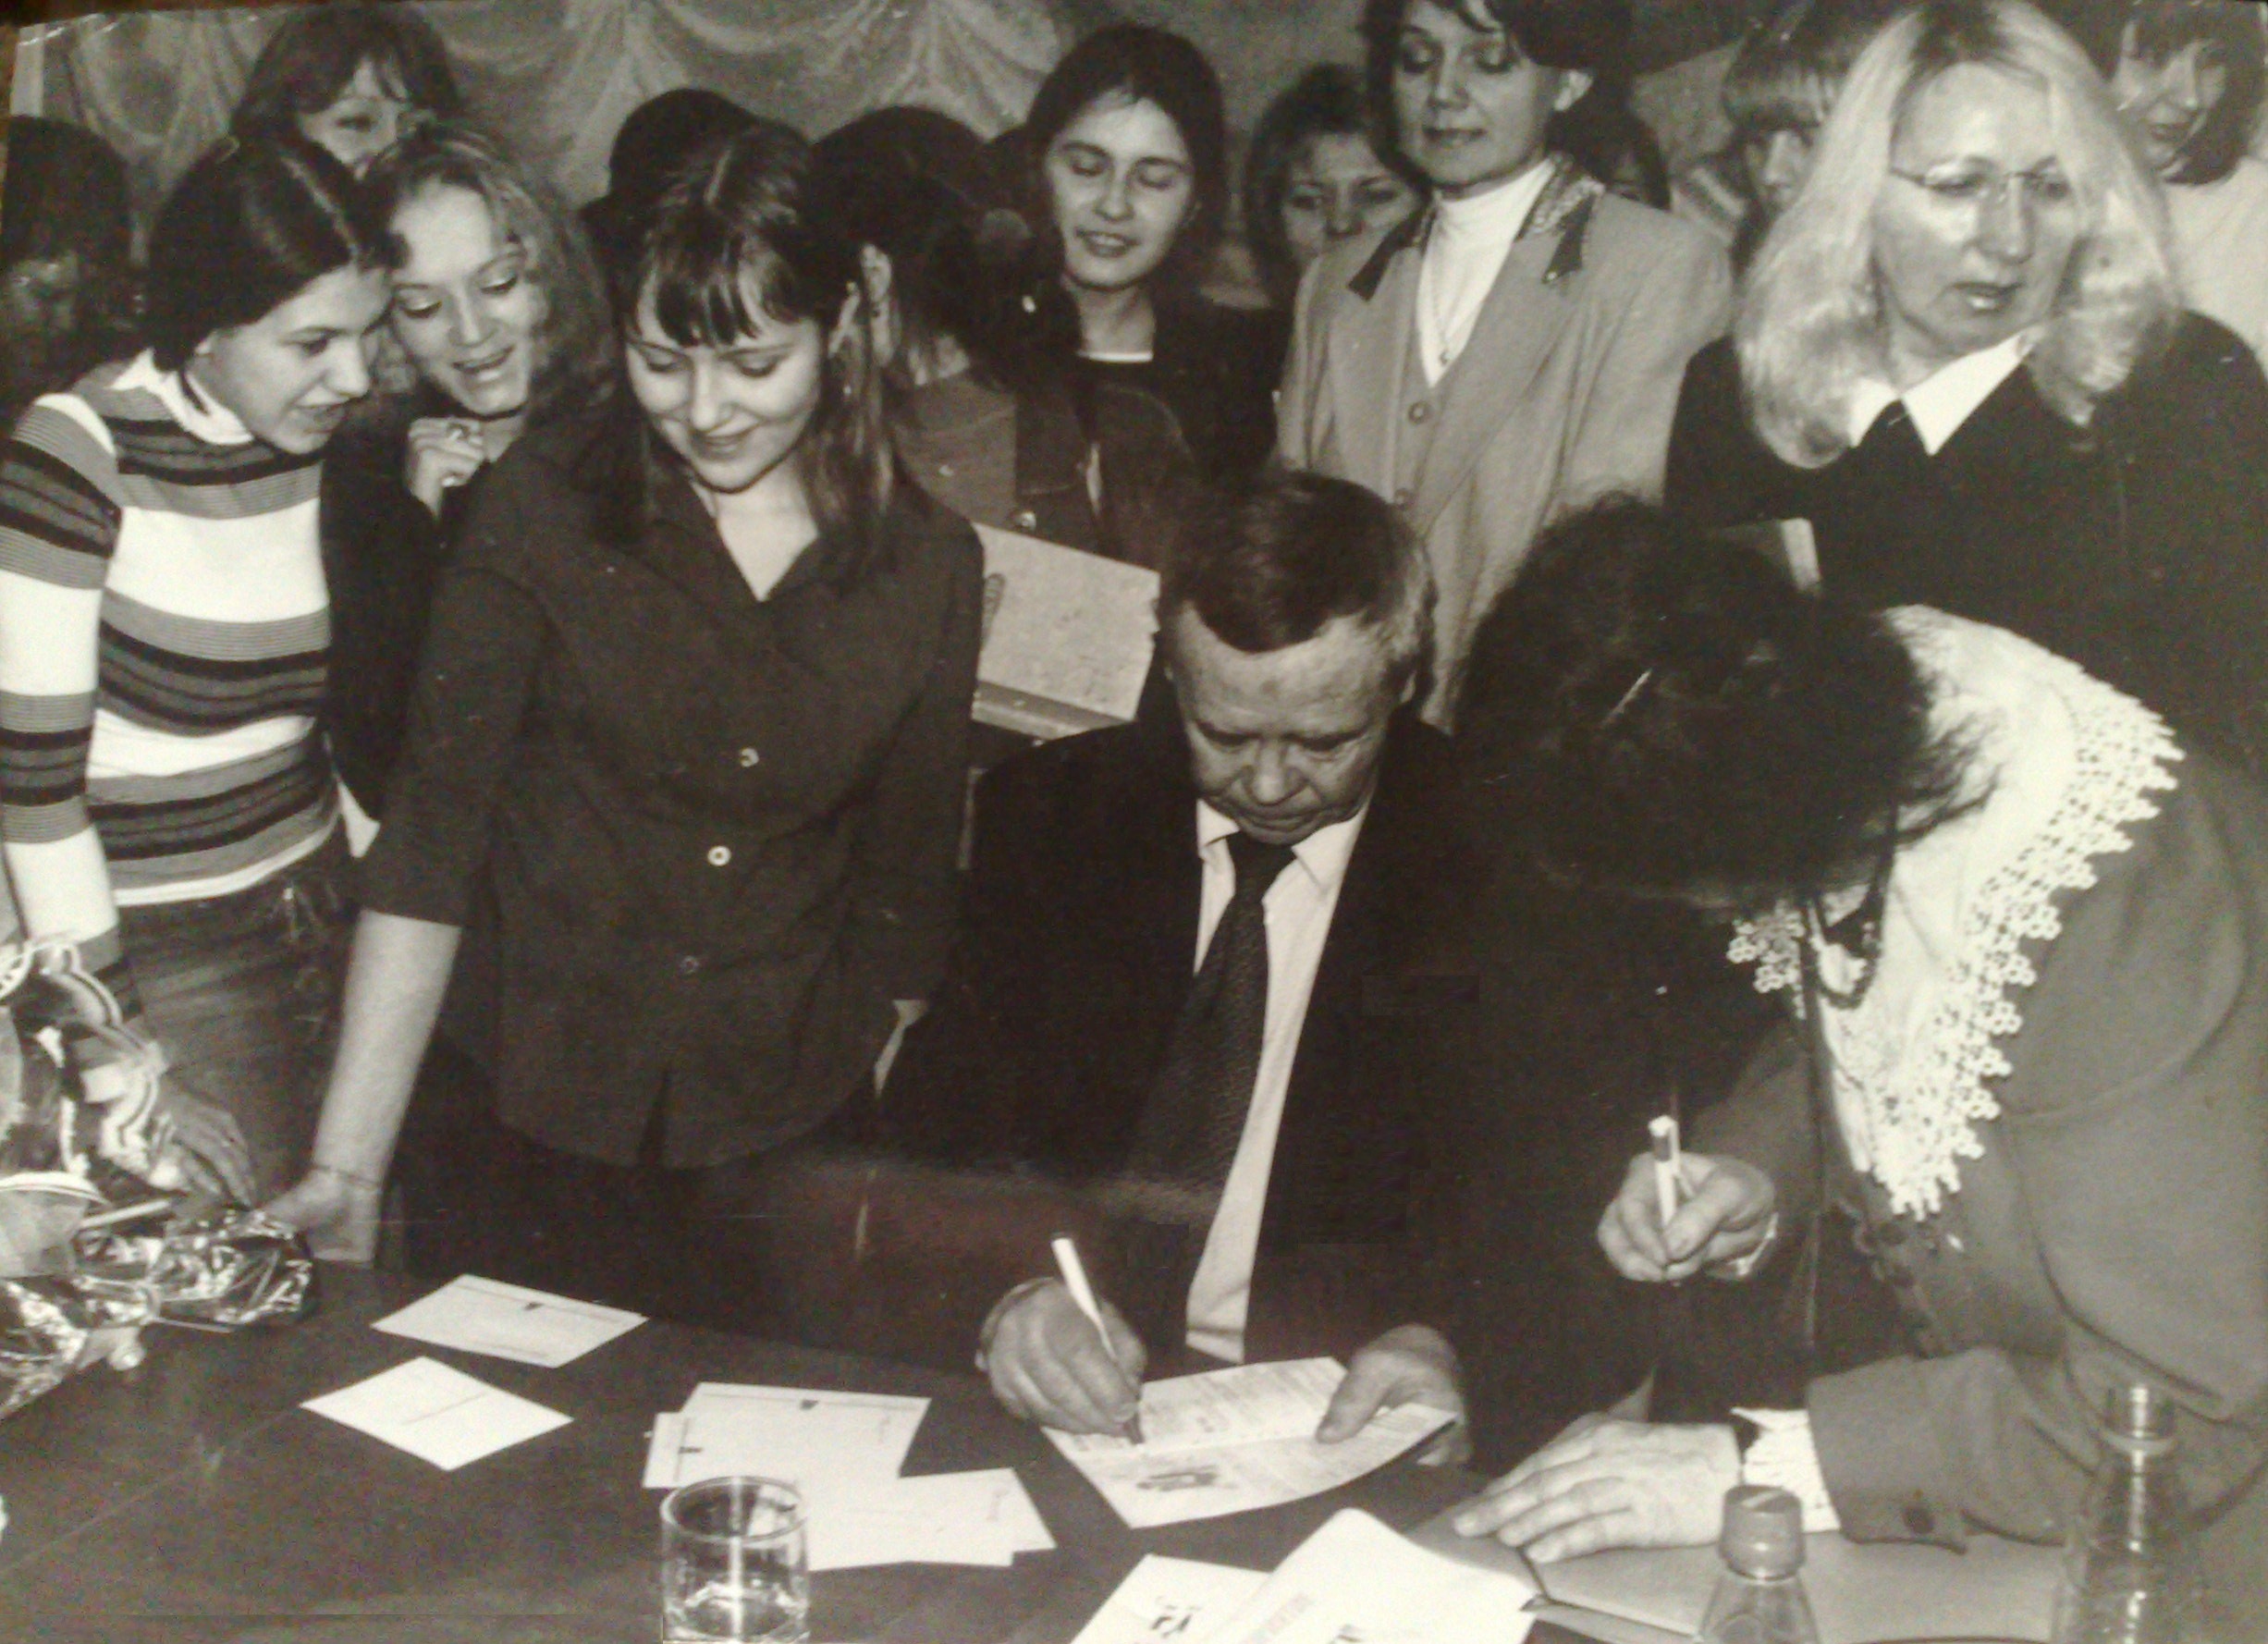 Сургутские студенты берут автограф у Валентина Распутина. Фото из архива Н. Рябковой